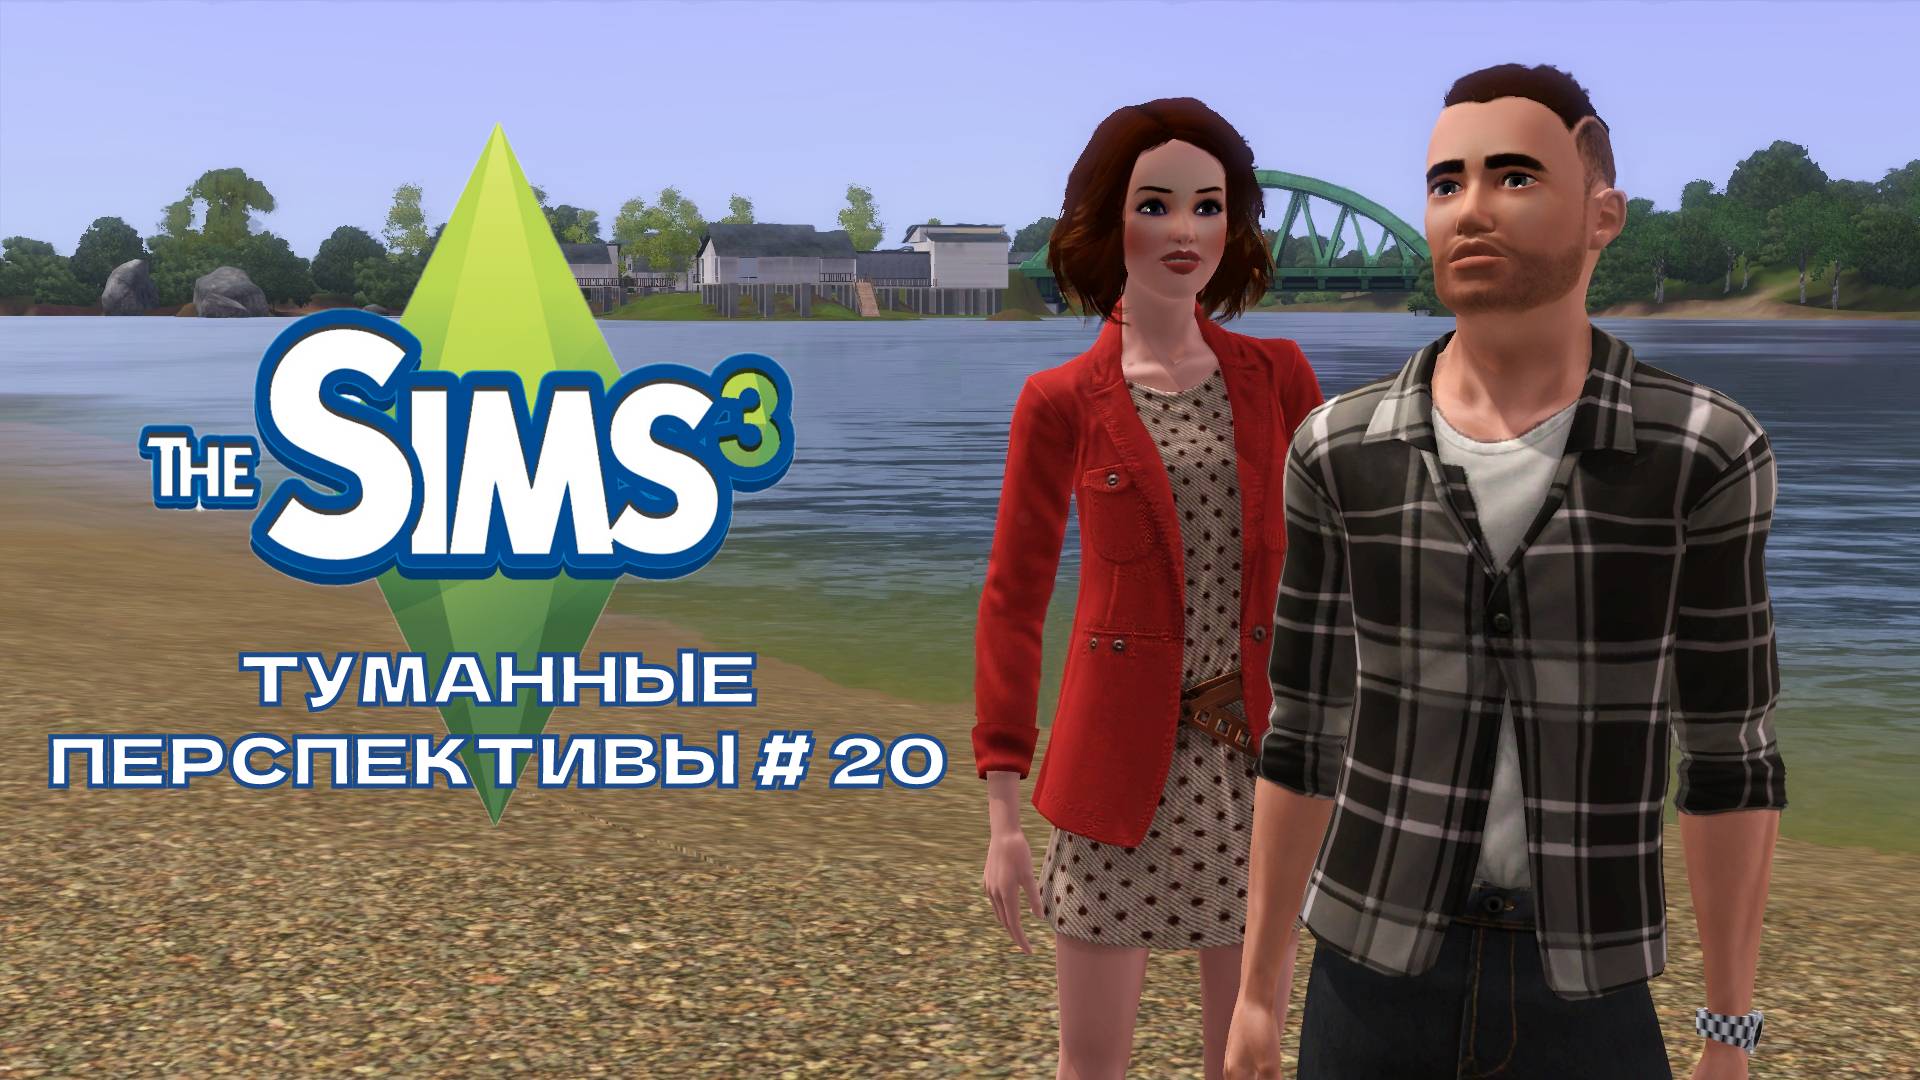 The Sims 3.Туманные перспективы #20. Друг без друга